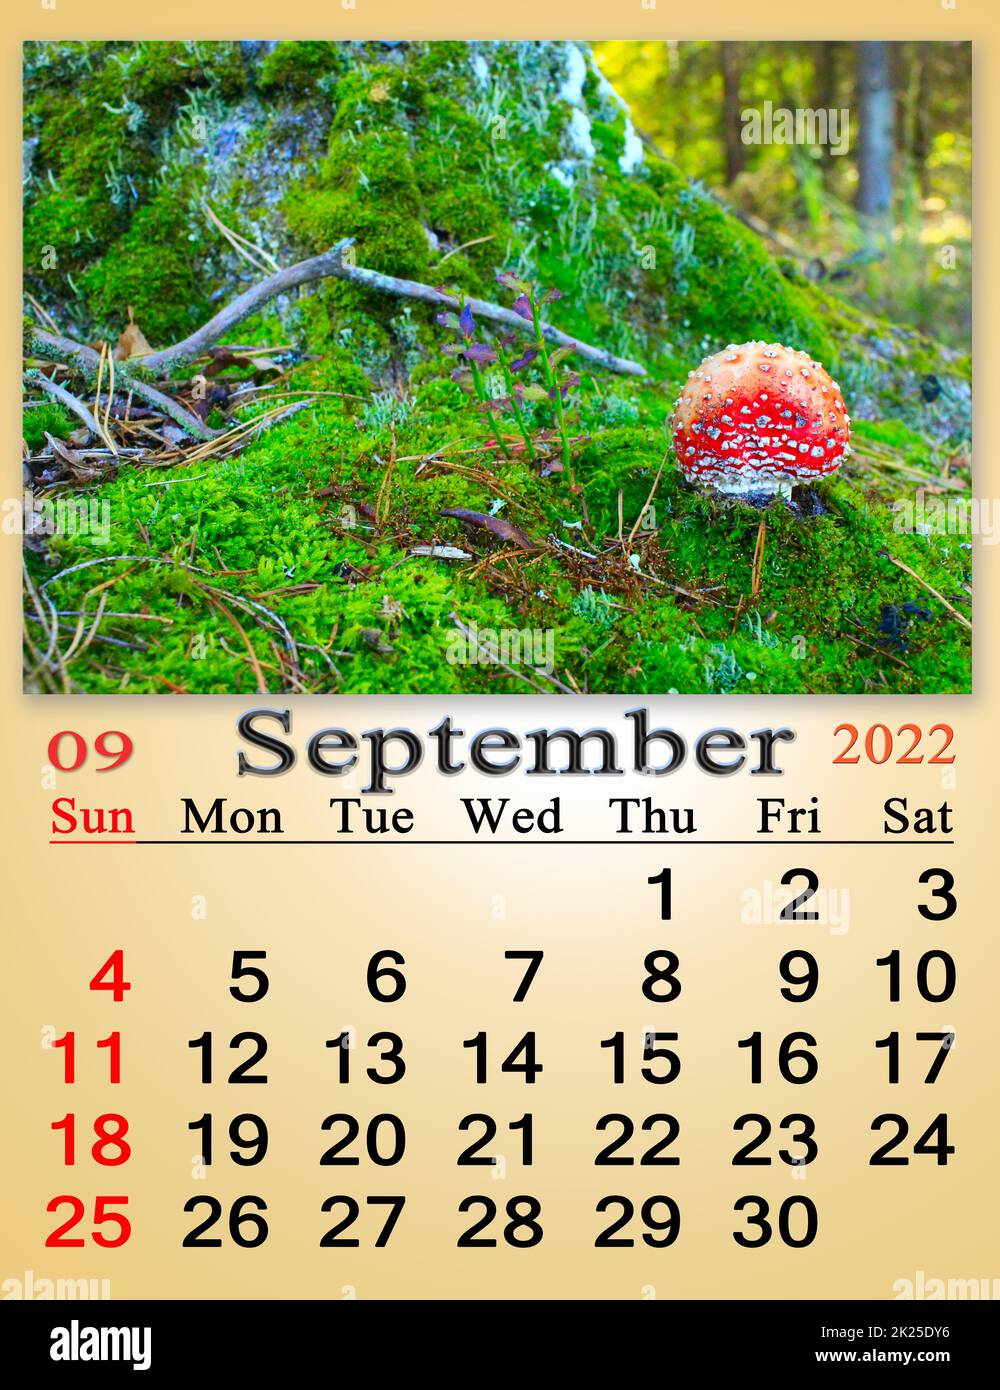 calendario per ottobre 2022 con immagine di agarico mosca crescente in muschio verde Foto Stock